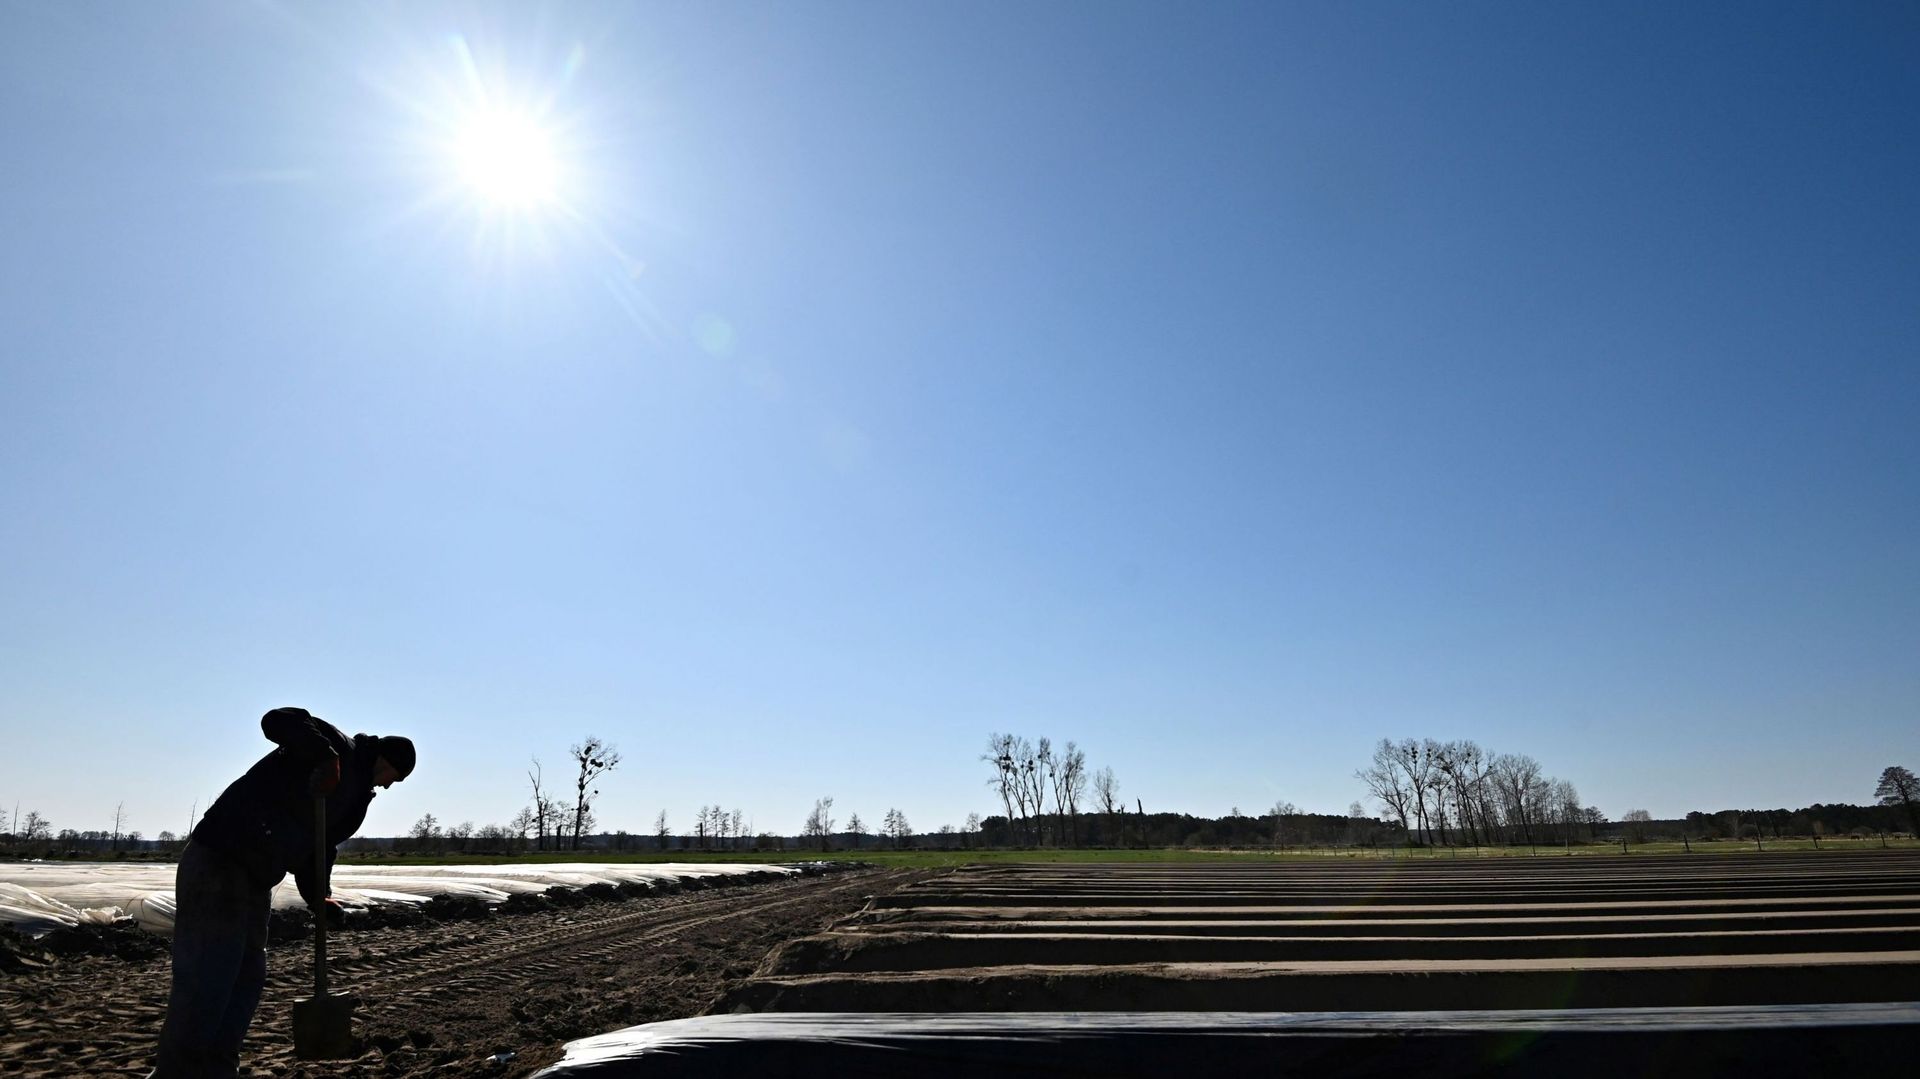 La cueillette des asperges au printemps, comme dans ce champ en Allemagne, est touchée par le manque de travailleurs saisonniers